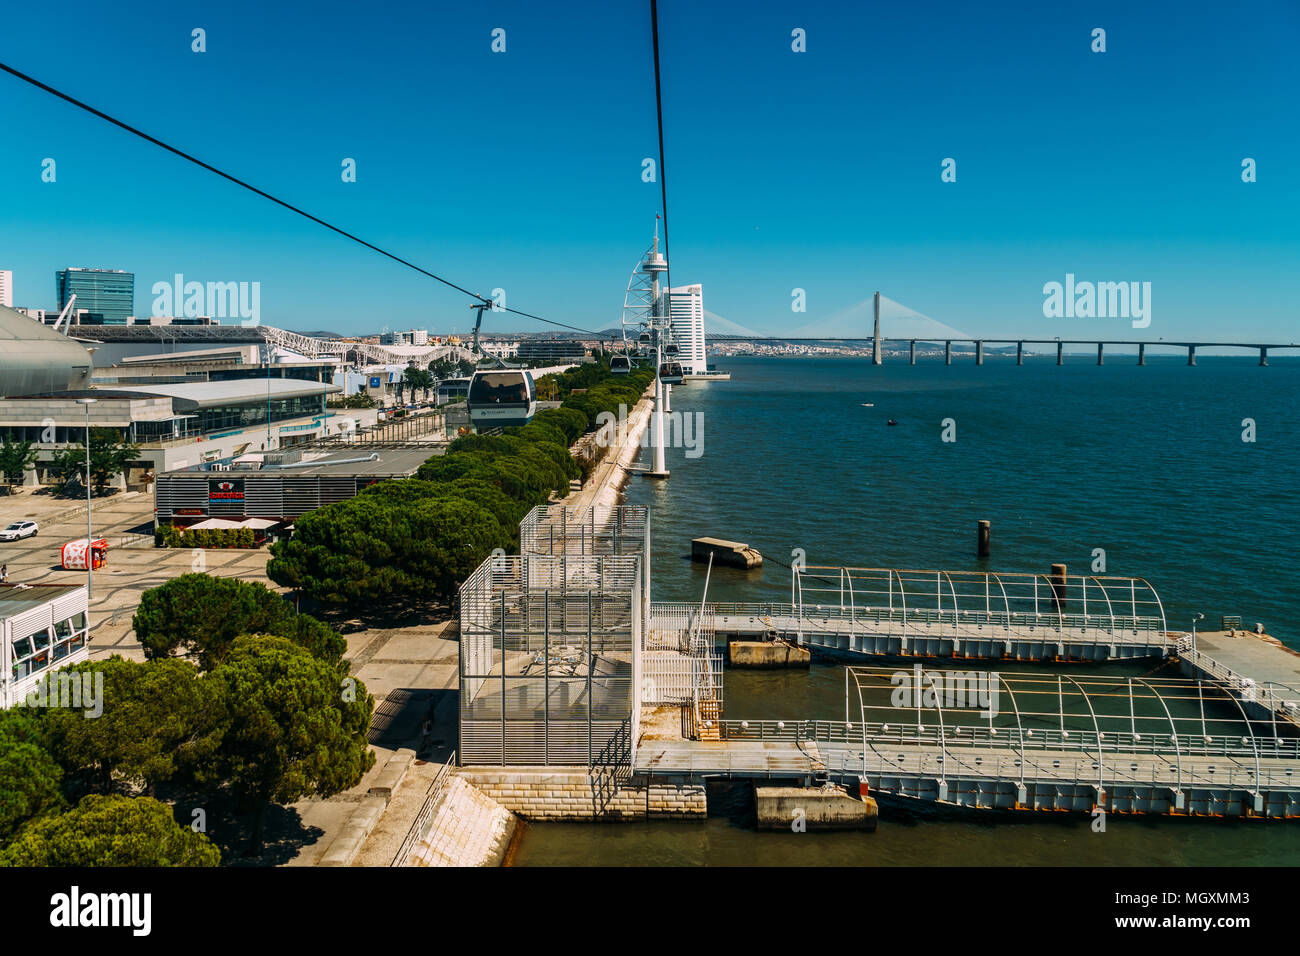 Lisbonne, Portugal - 15 août 2017 : Vue aérienne du trajet en téléphérique du Parque das Nações (Parc des Nations) à Lisbonne Banque D'Images